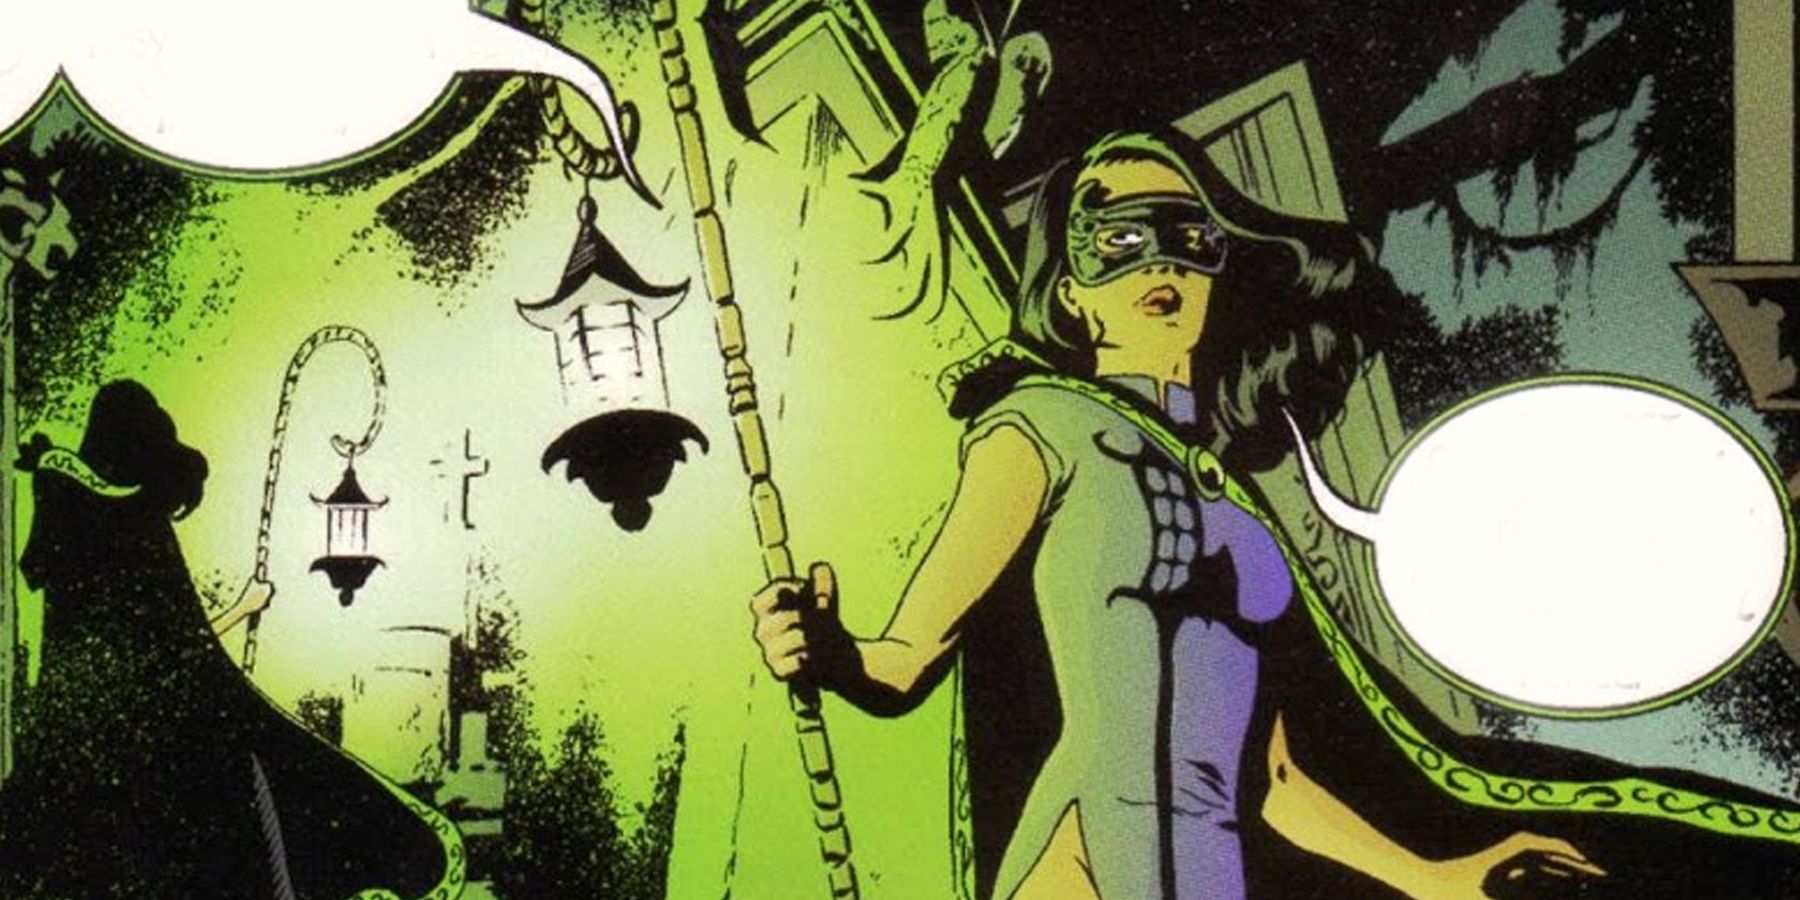 Lois Lane as Green Lantern